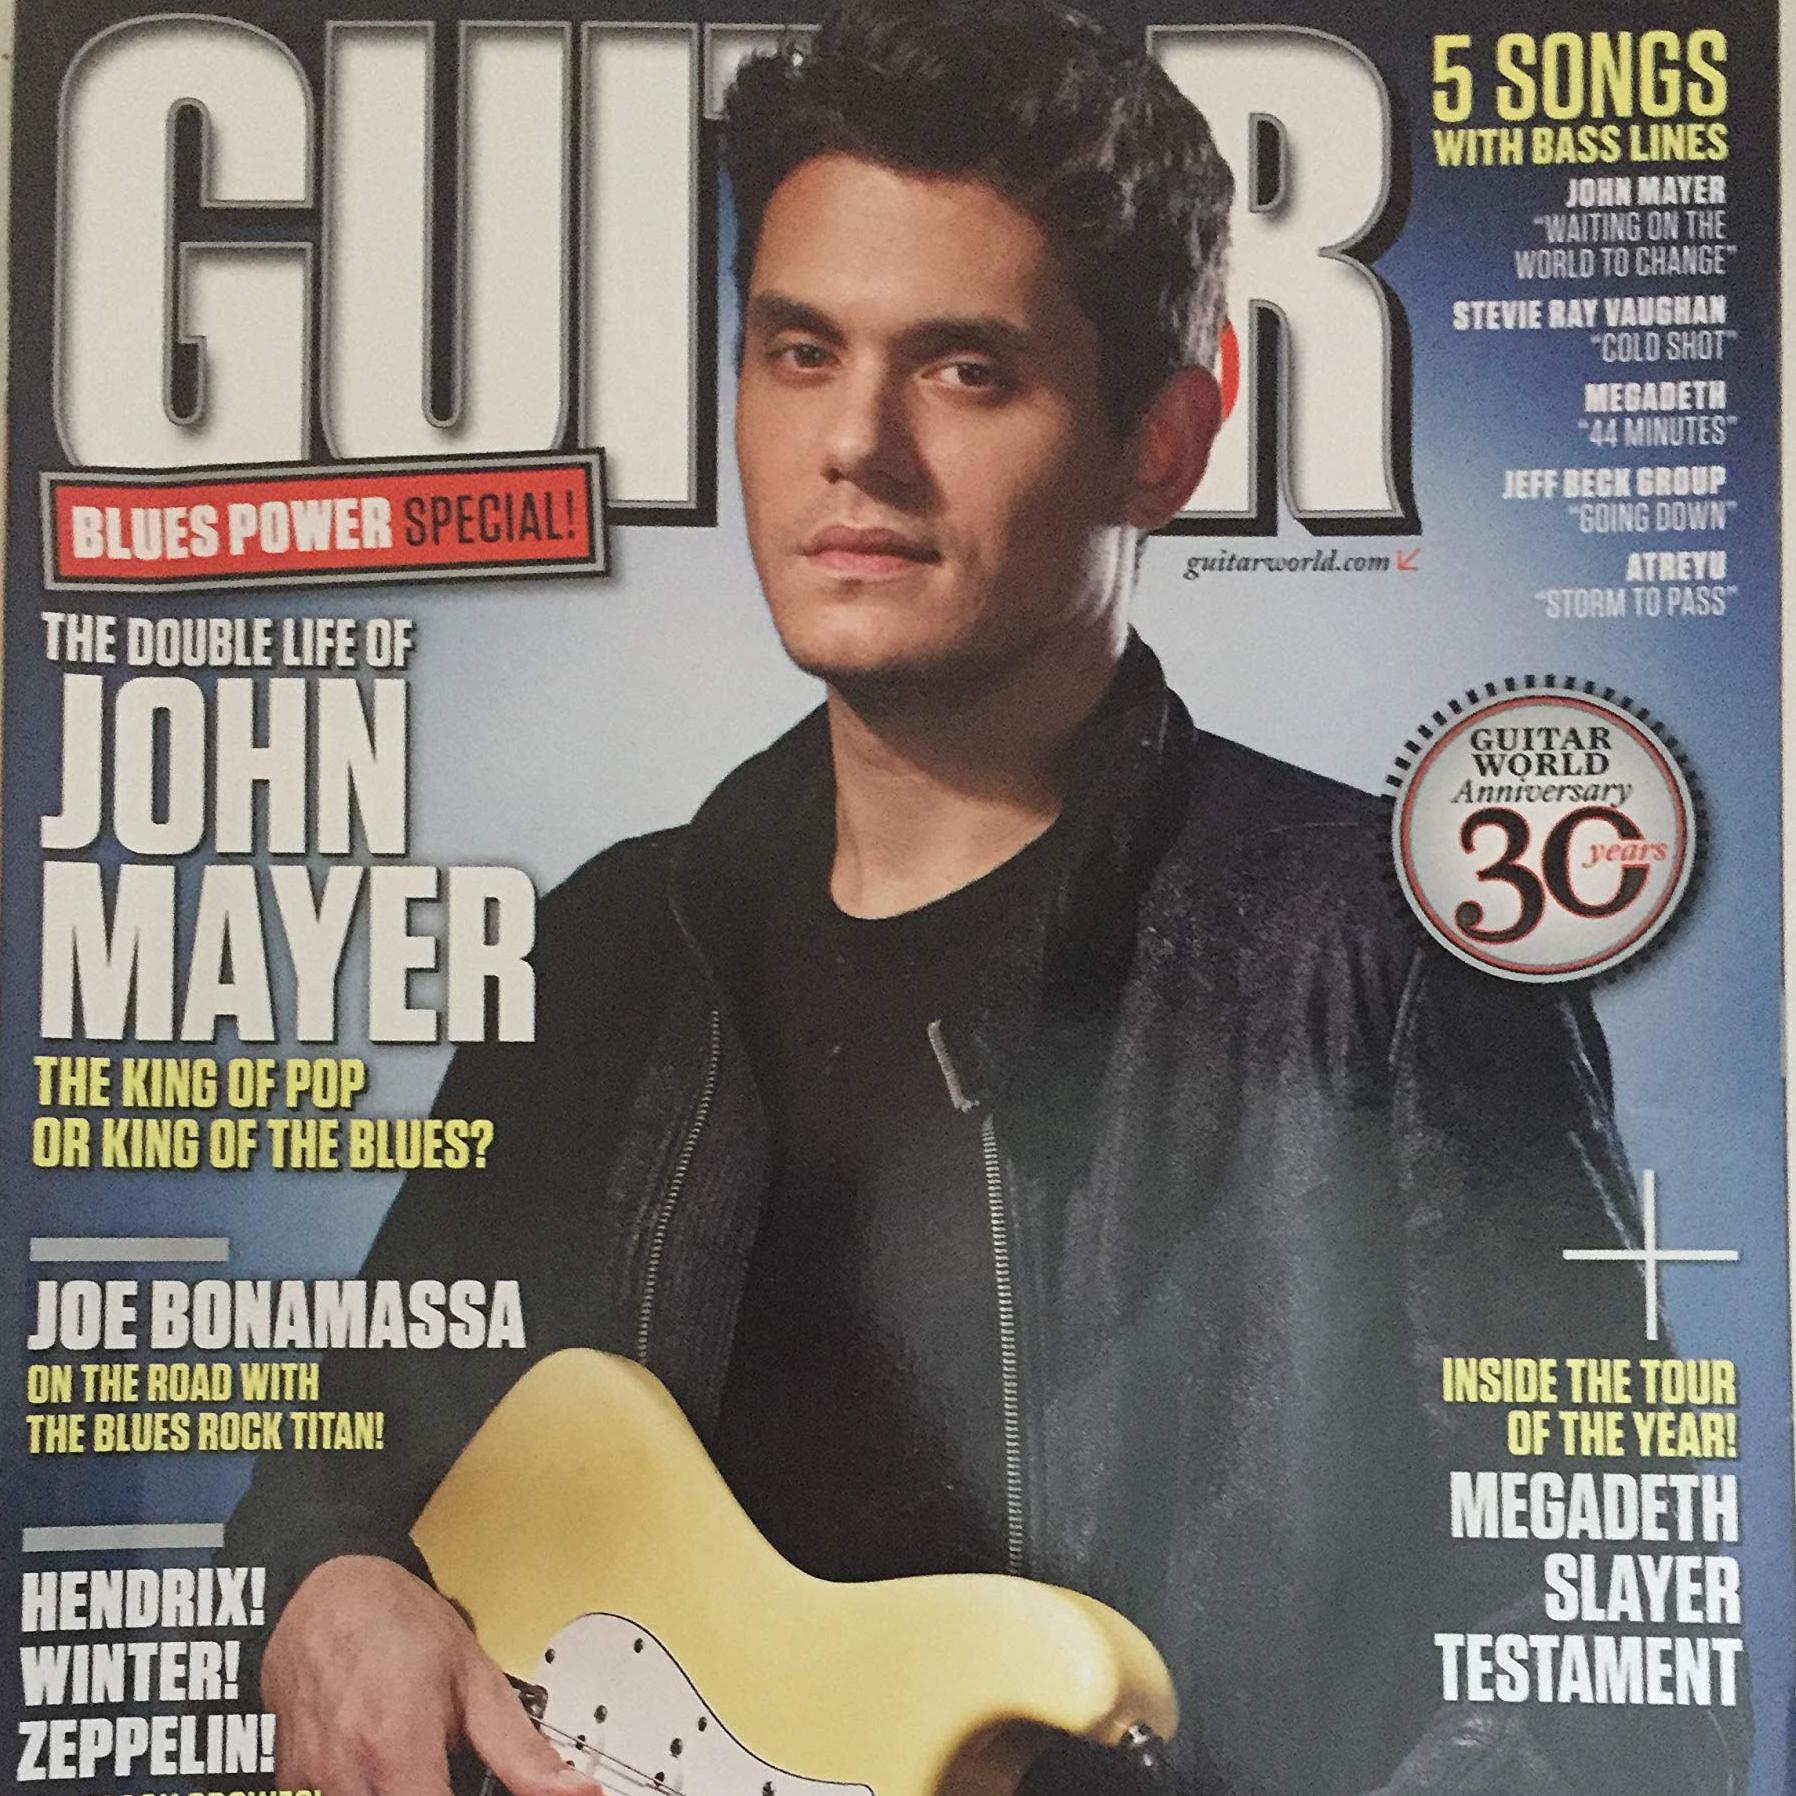 Interview in Guitar World magazine